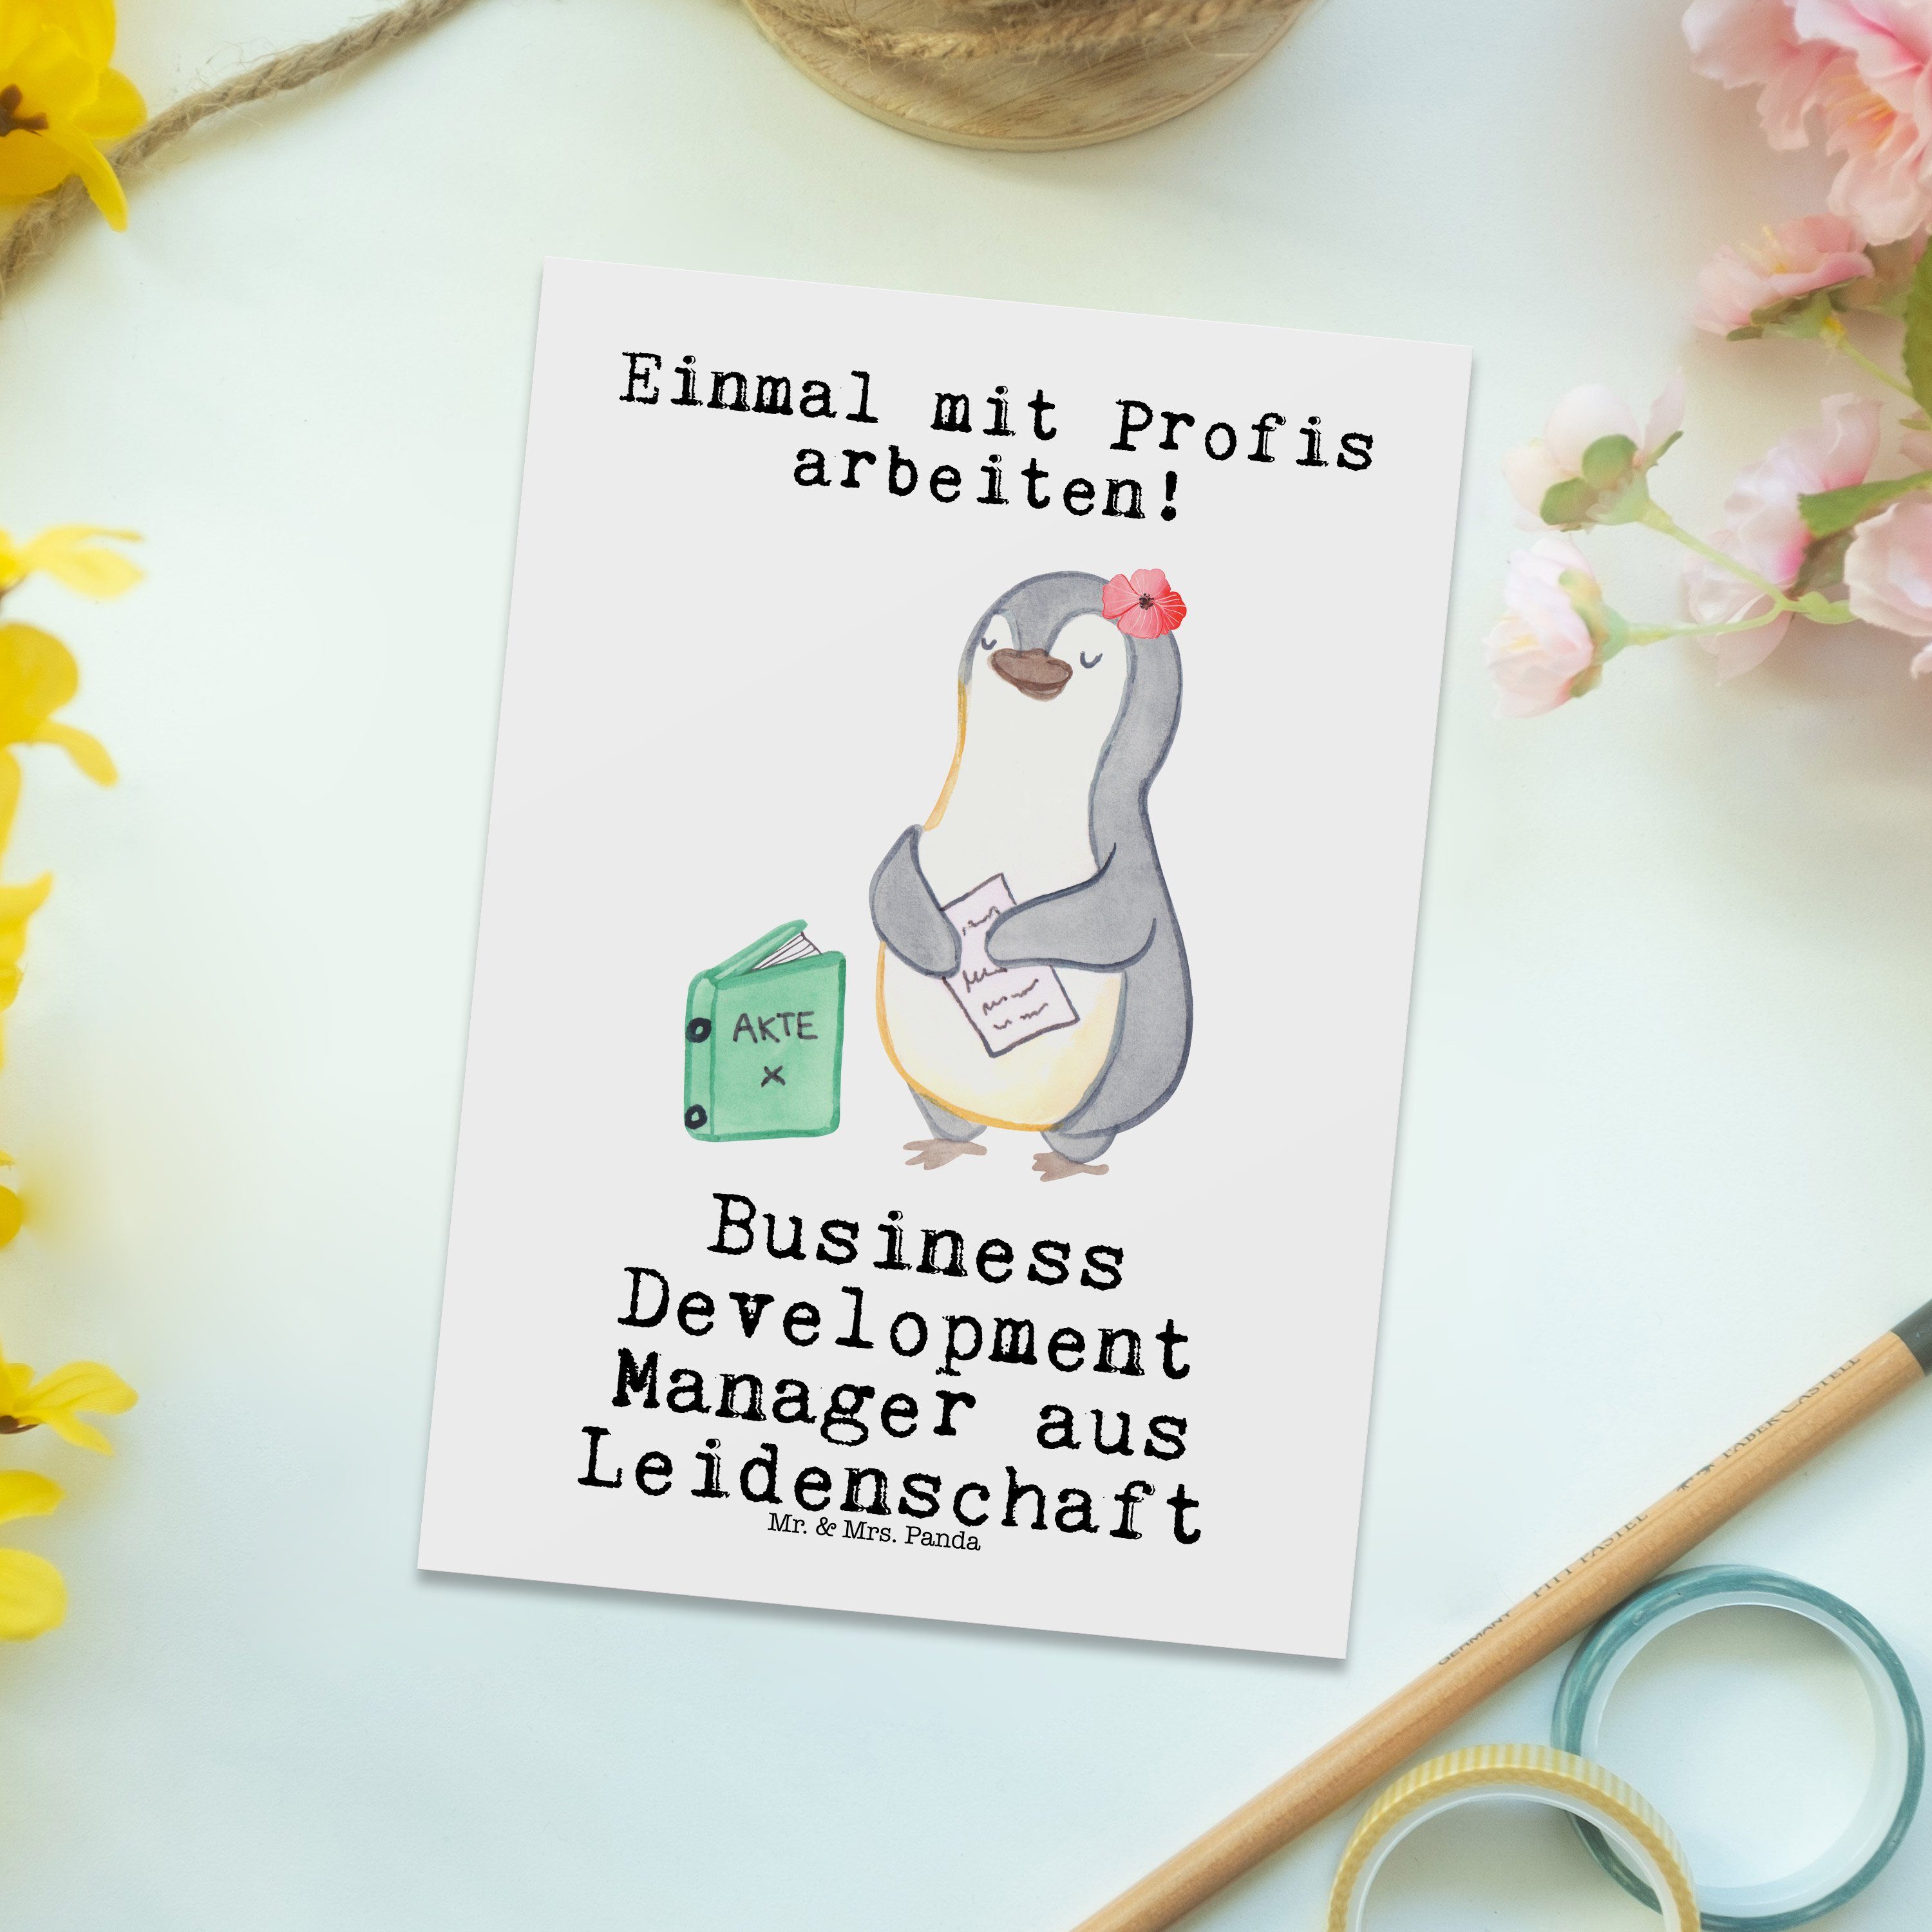 Mr. Postkarte Weiß Manager aus Business - Development - Koll Mrs. Leidenschaft Panda & Geschenk,